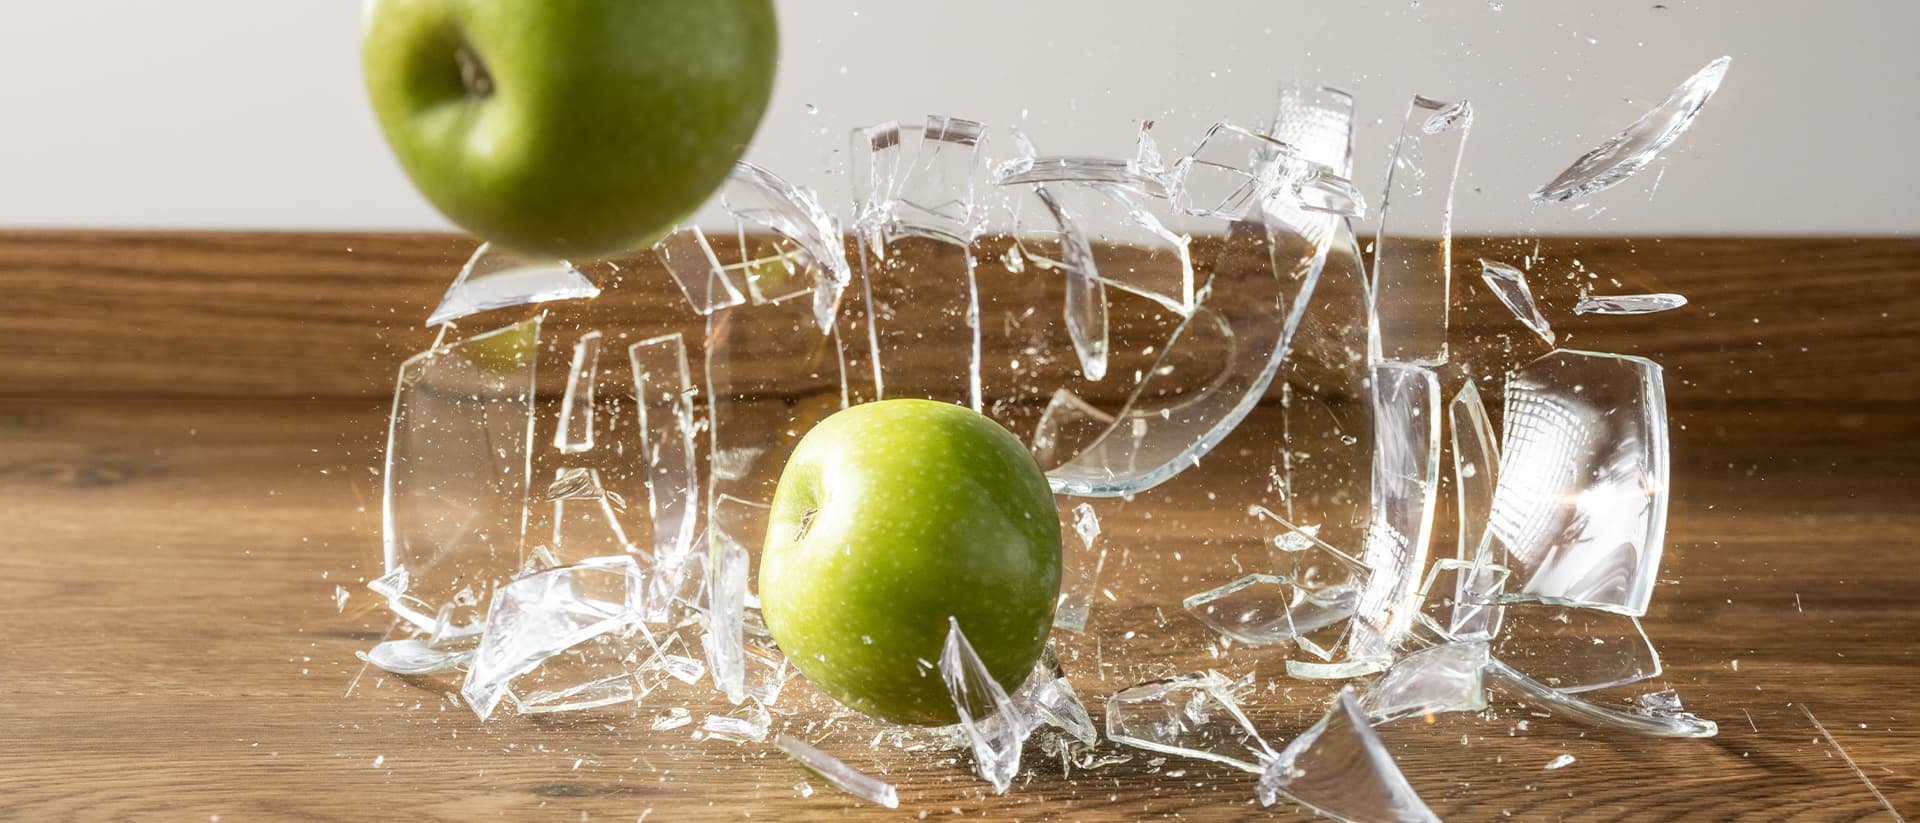 glasvase med æbler falder ned på et brunt vinylgulv og går i stykker